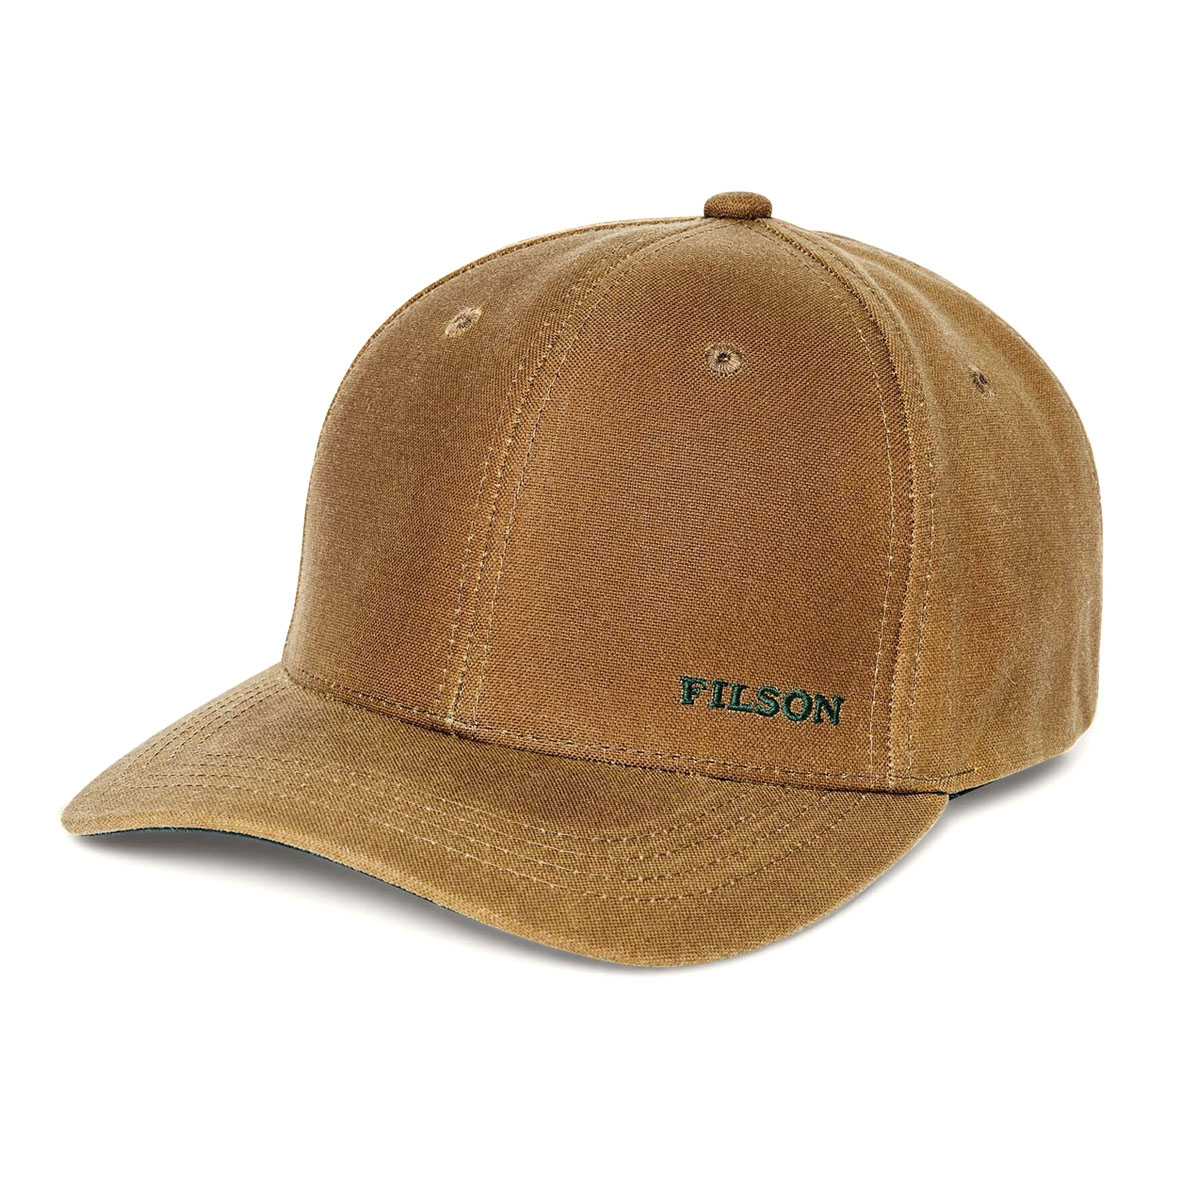 Filson Oil Tin Logger Cap Dark Tan, duurzaam en waterbestendig met de vorm van een klassieke trucker cap